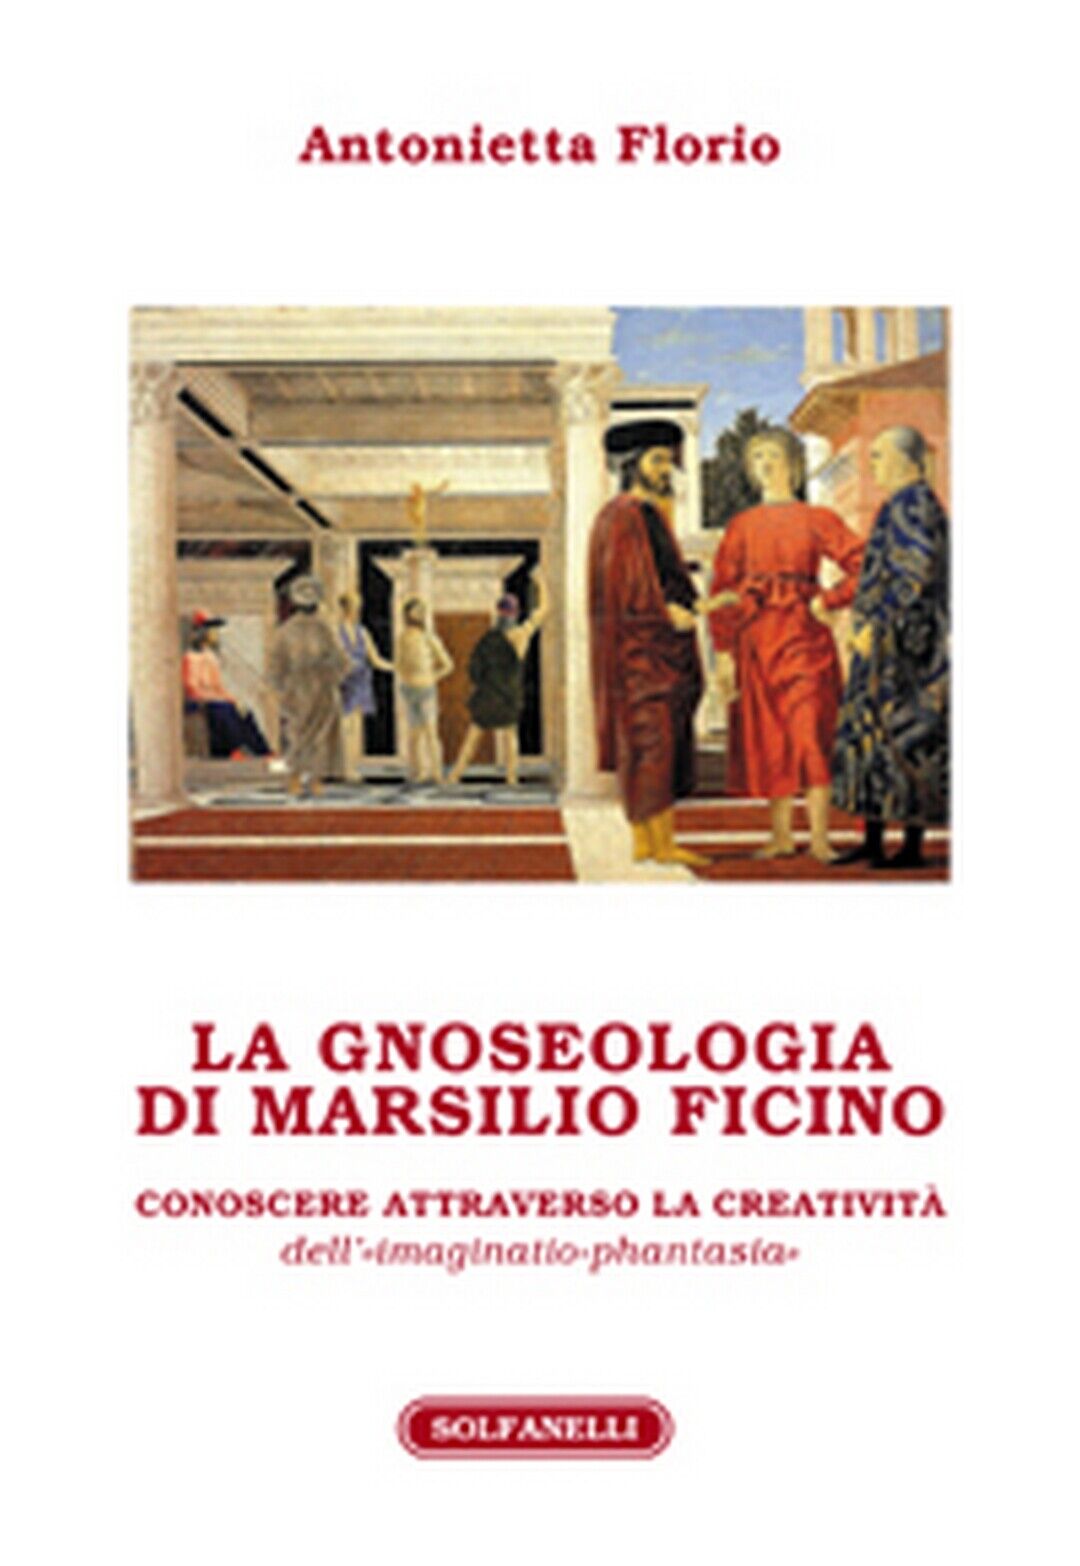 LA GNOSEOLOGIA DI MARSILIO FICINO  di Antonietta Florio,  Solfanelli Edizioni